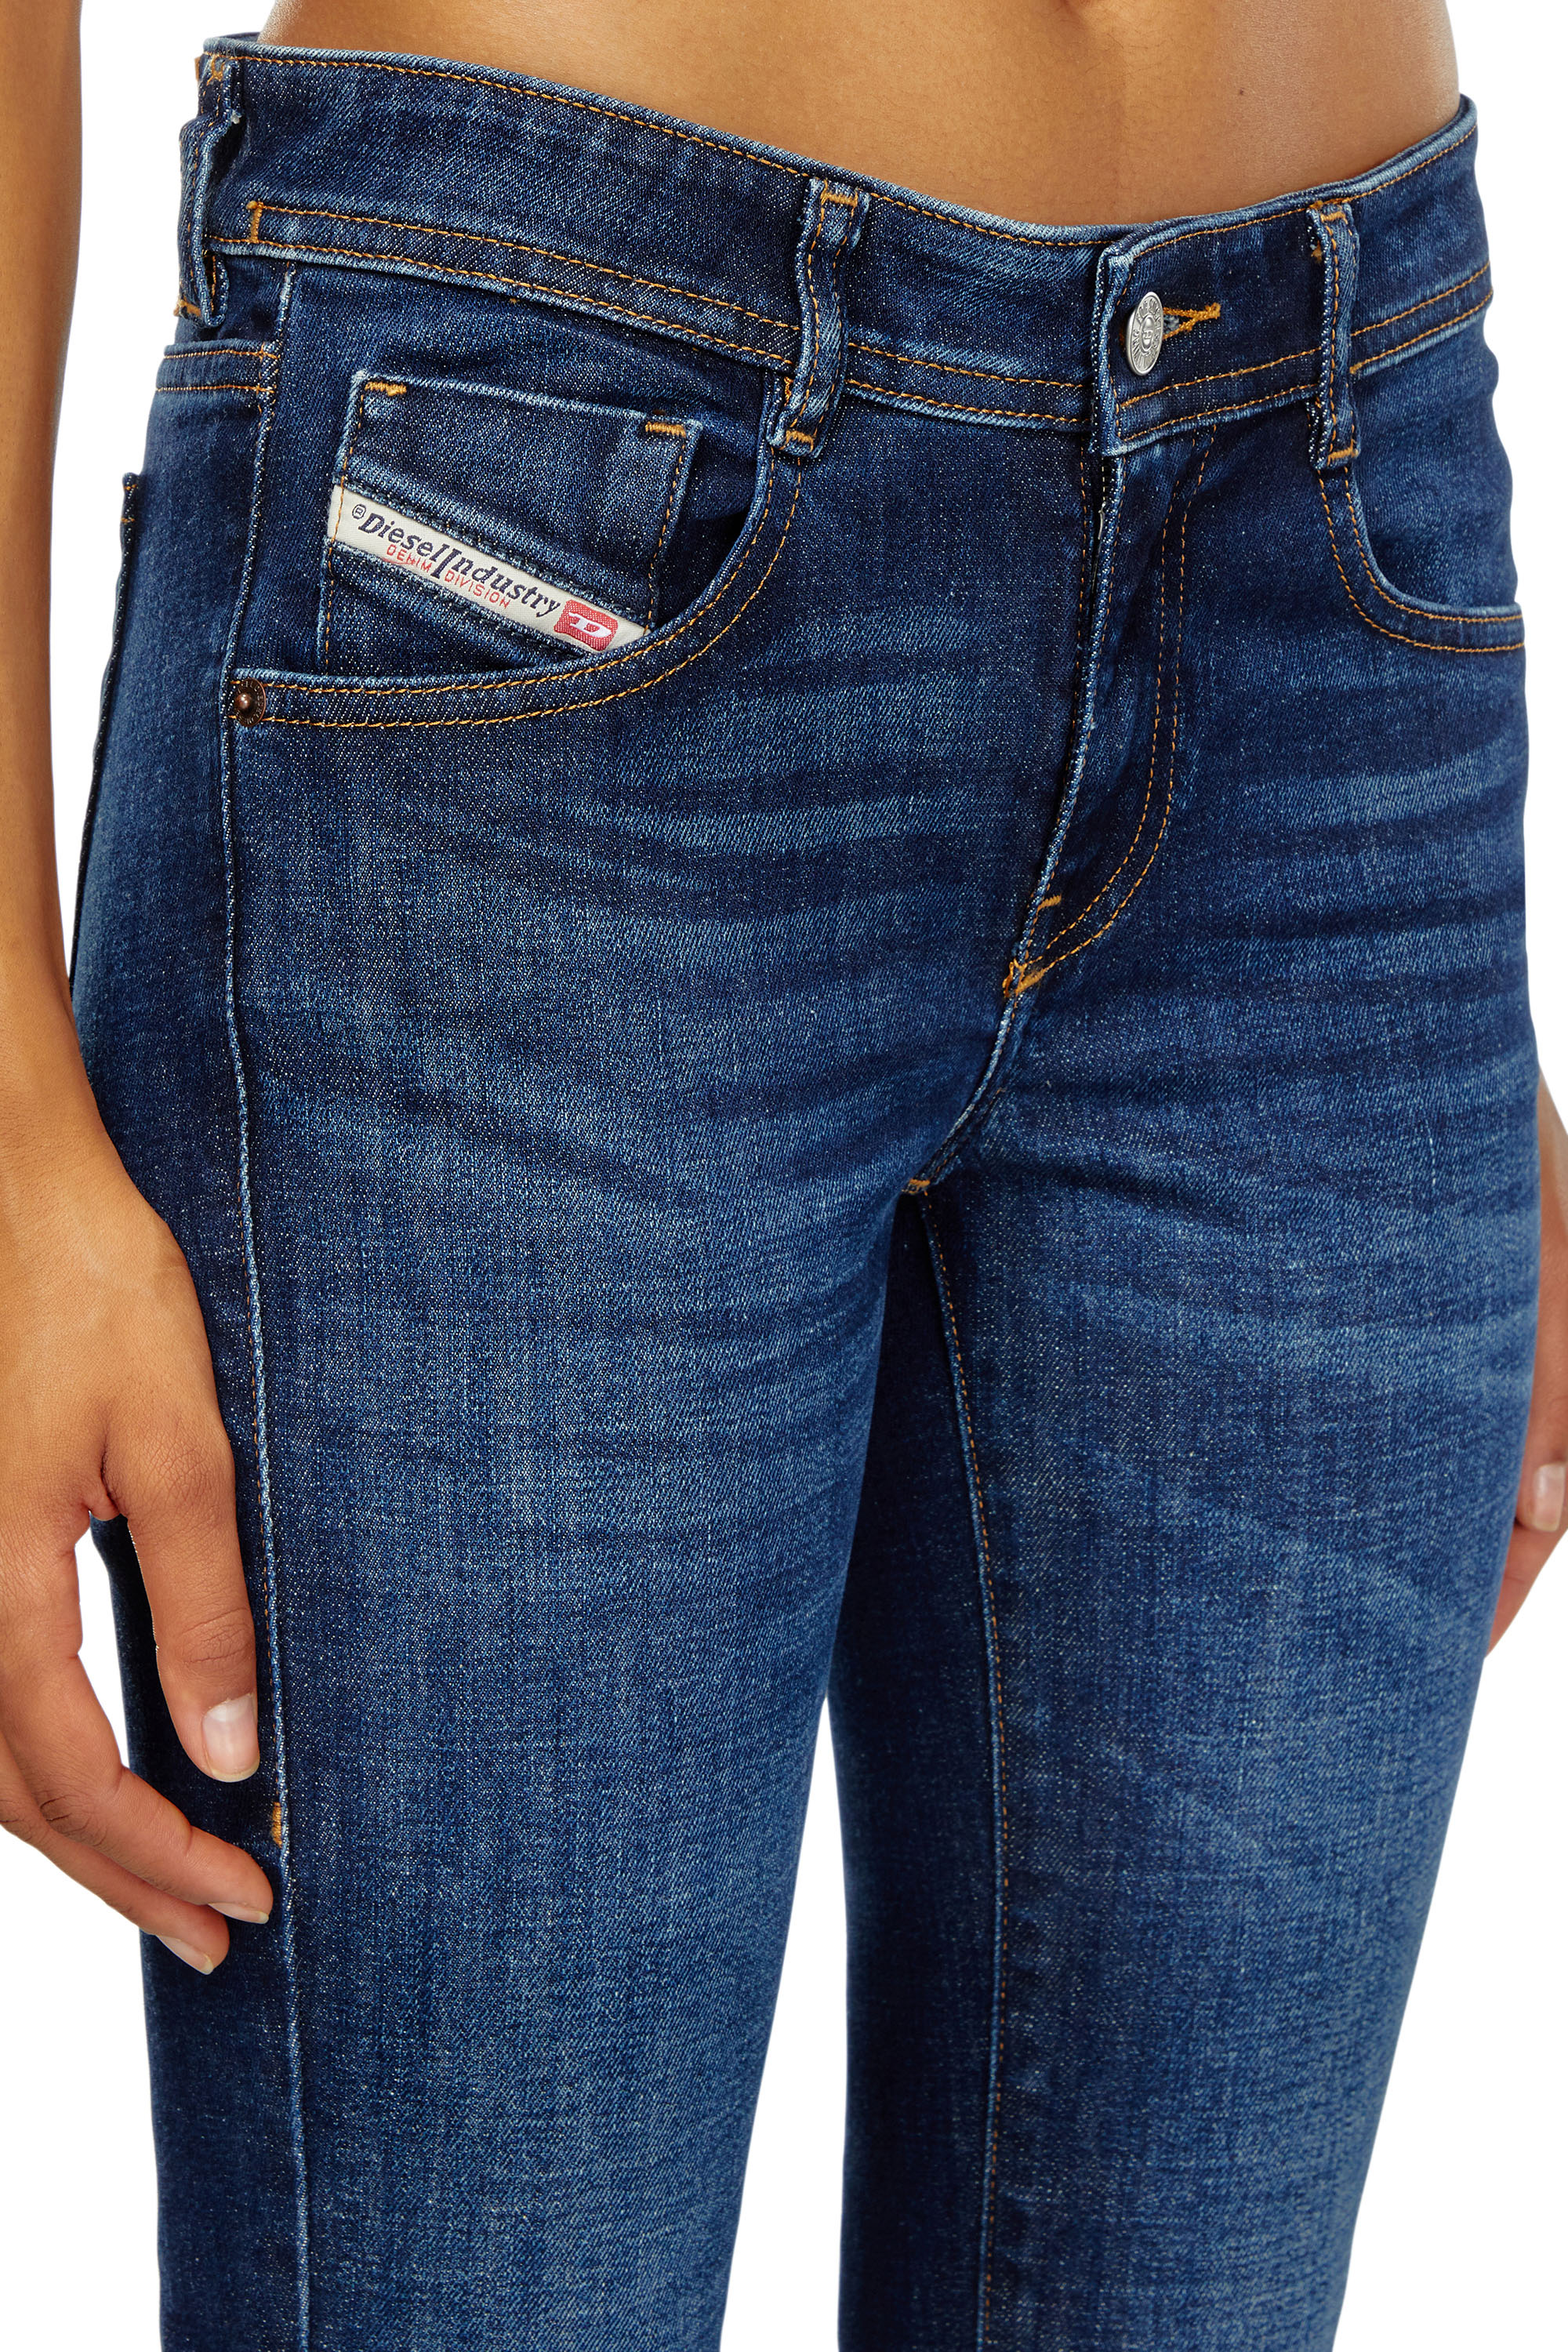 Unsere Top Auswahlmöglichkeiten - Suchen Sie auf dieser Seite die Diesel jeans damen bootcut entsprechend Ihrer Wünsche